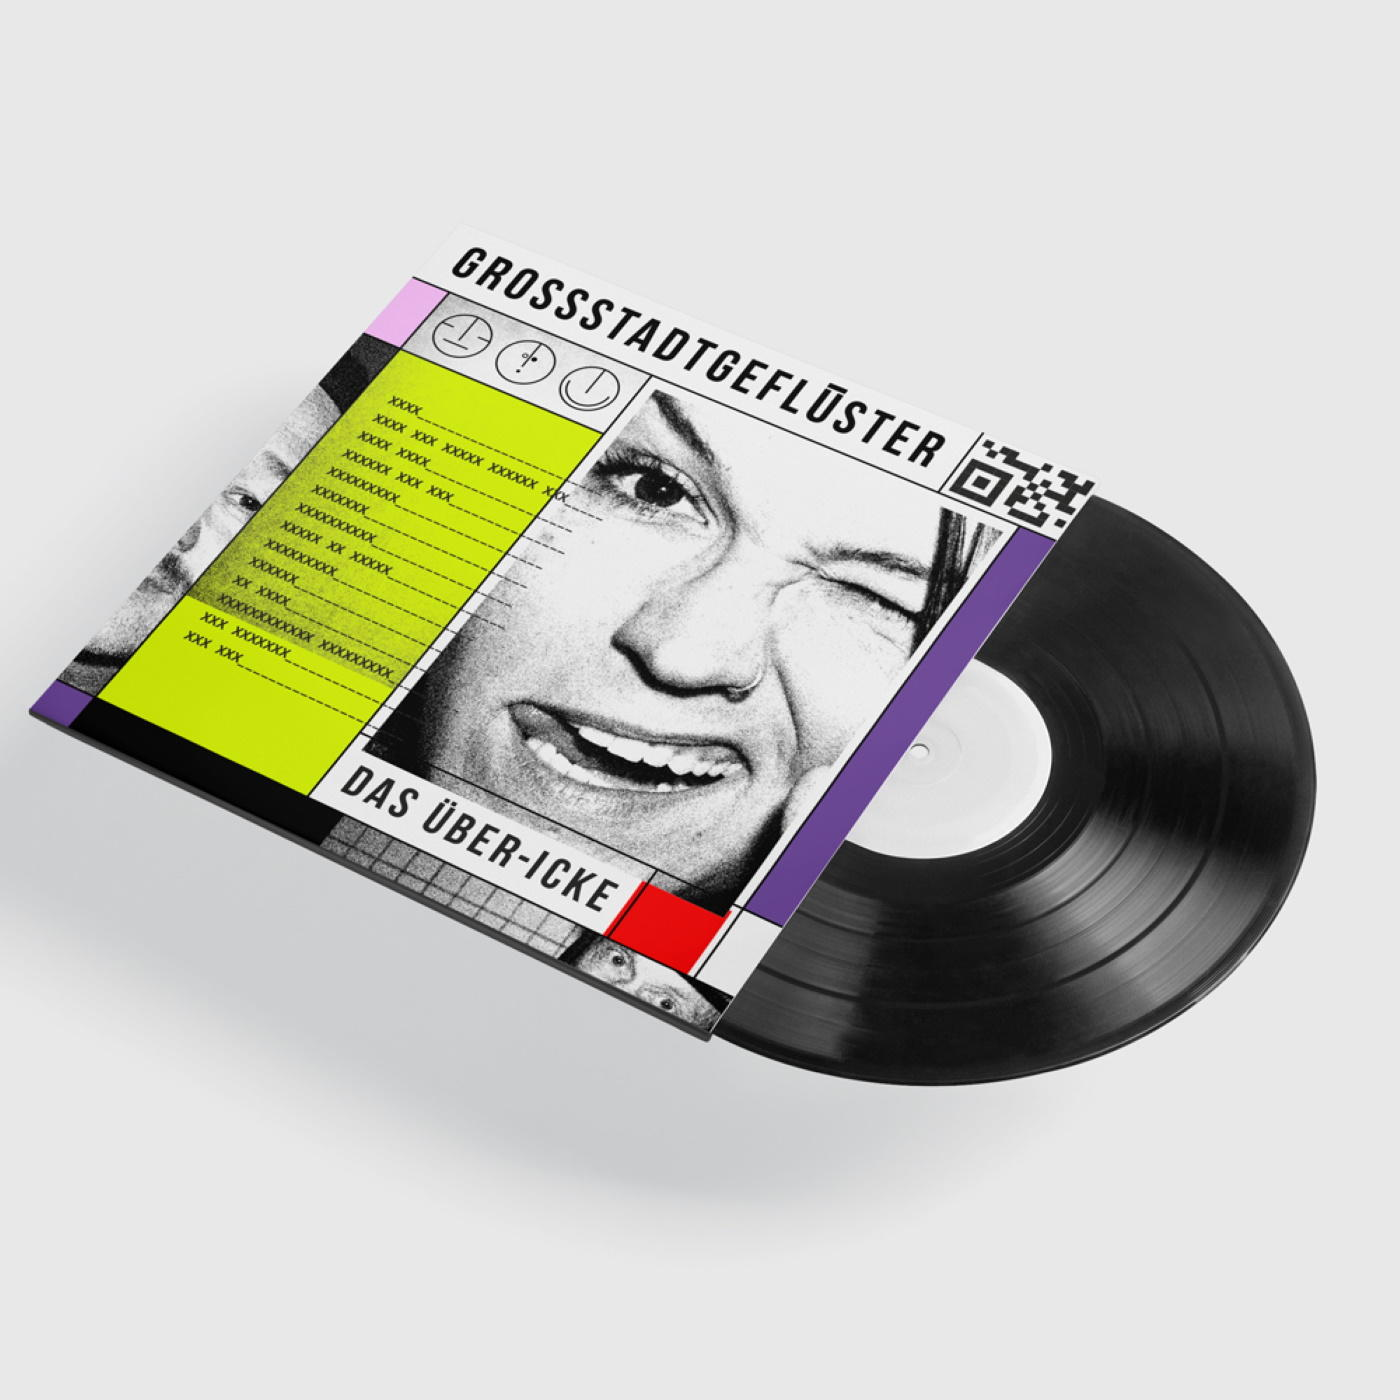 Grossstadtgeflüster - DAS ÜBER-ICKE - (Vinyl)